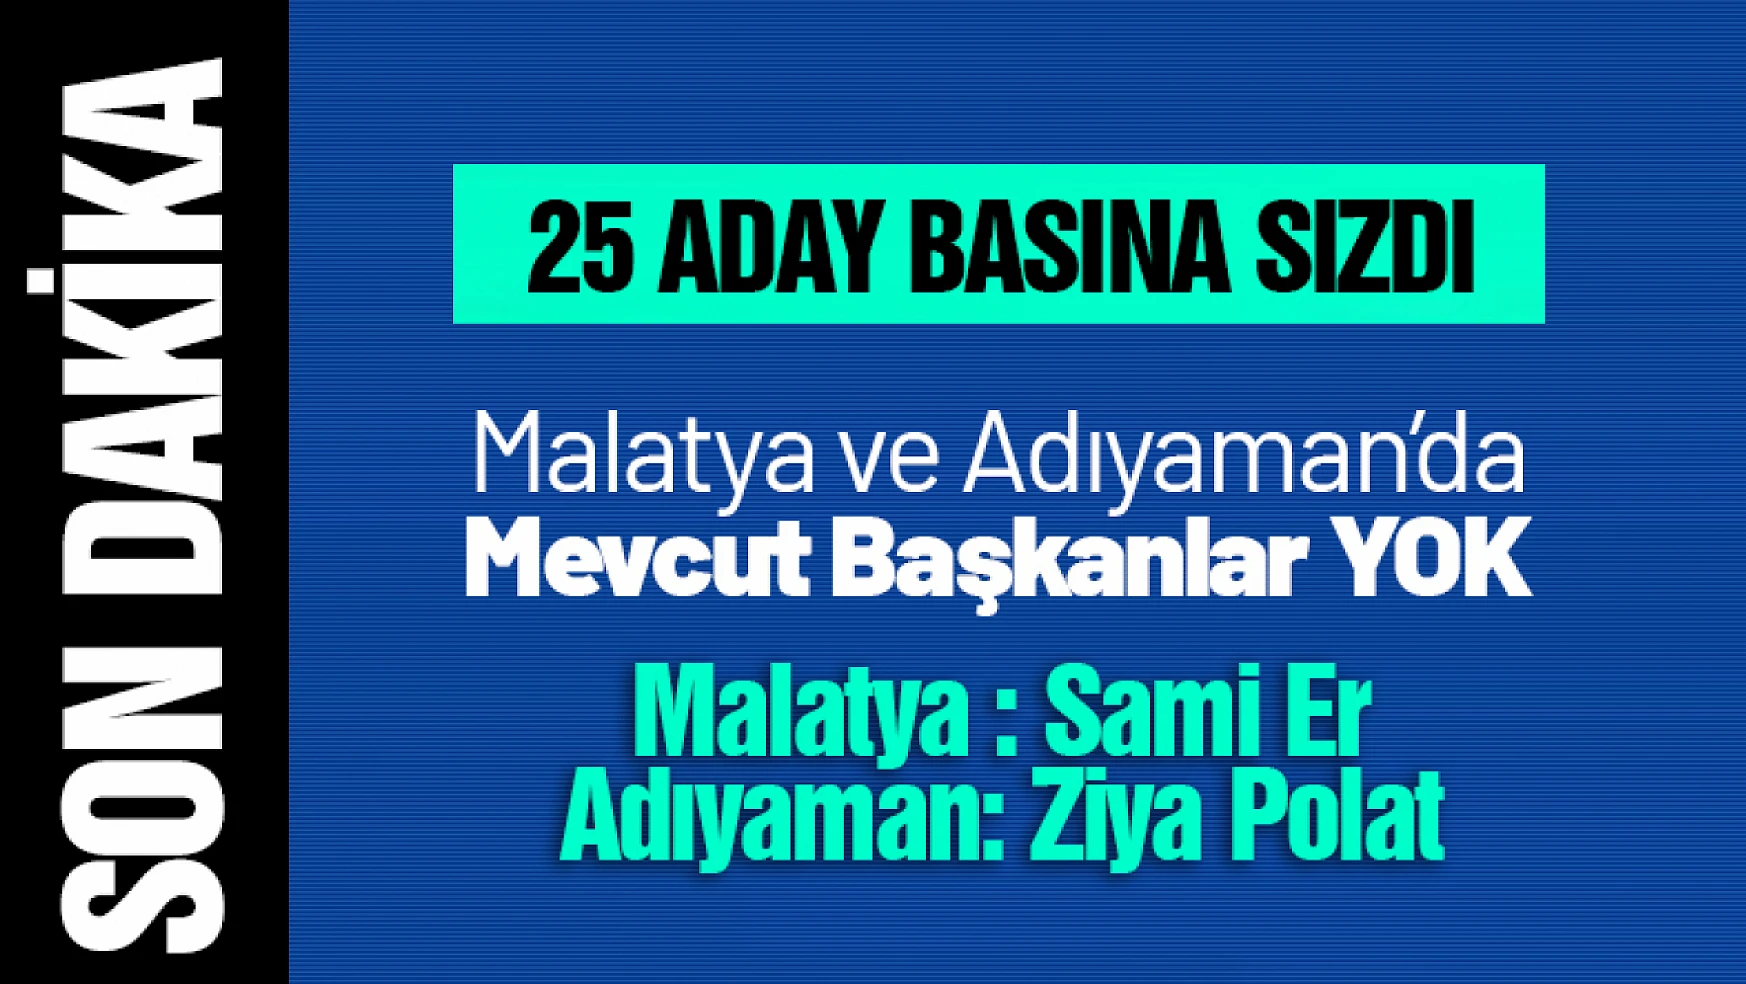 AK Parti, Malatya ve Adıyaman'da Mevcut Başkanları Aday Göstermedi...